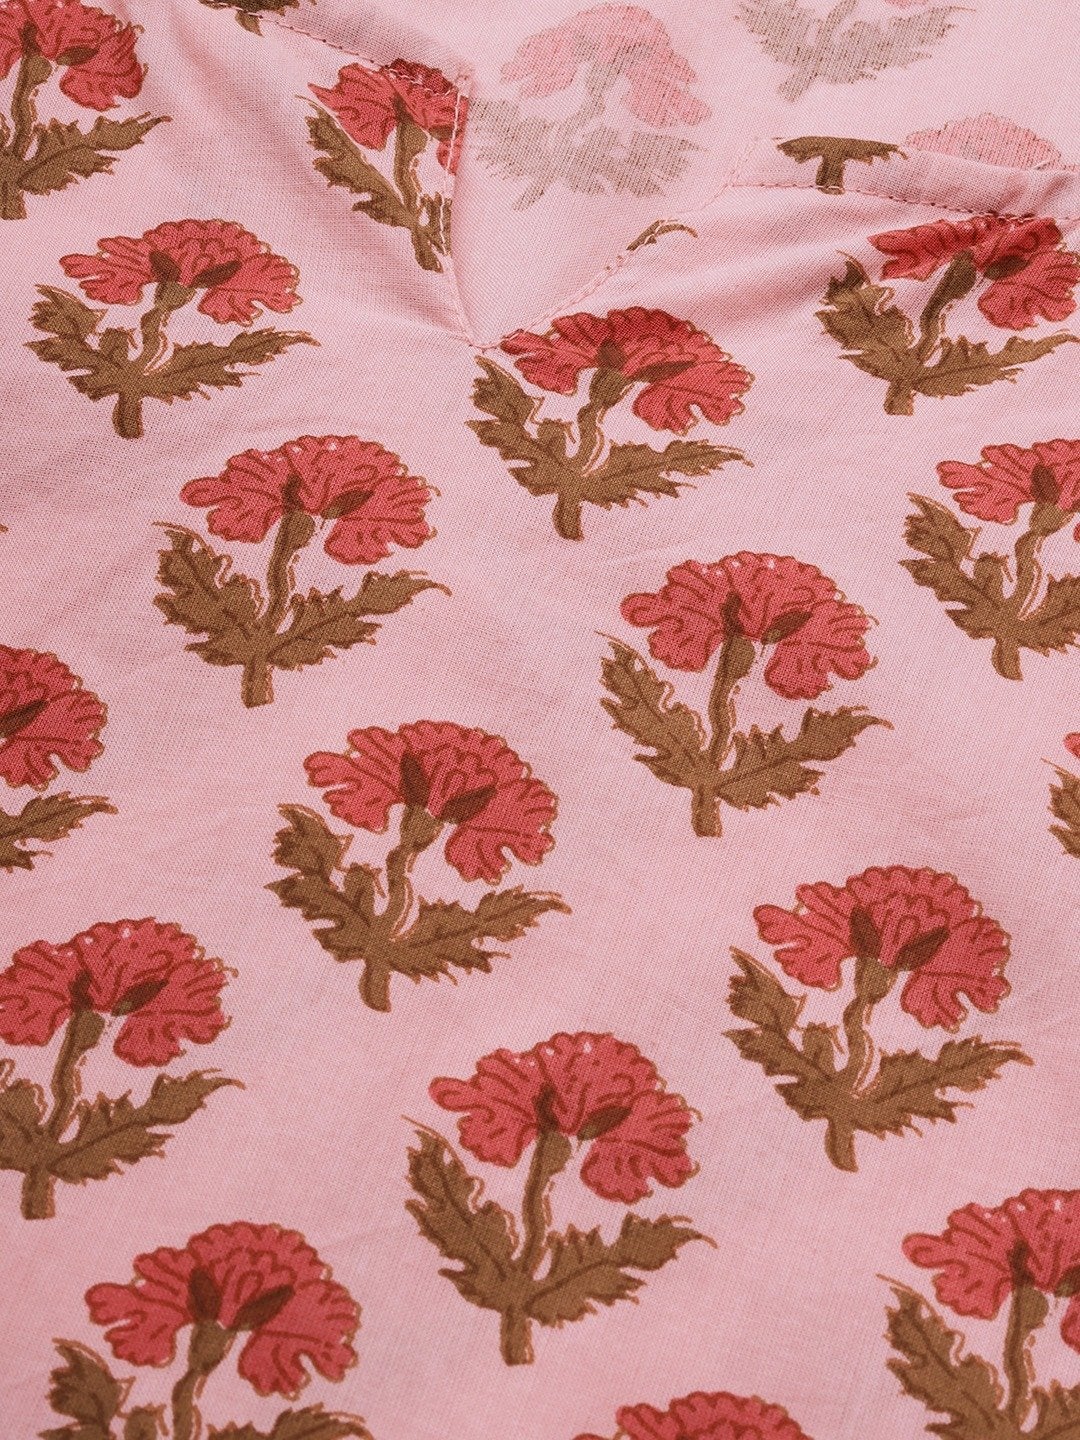 Women's Pink Cotton Loungewear /Nightwear Set - Divena